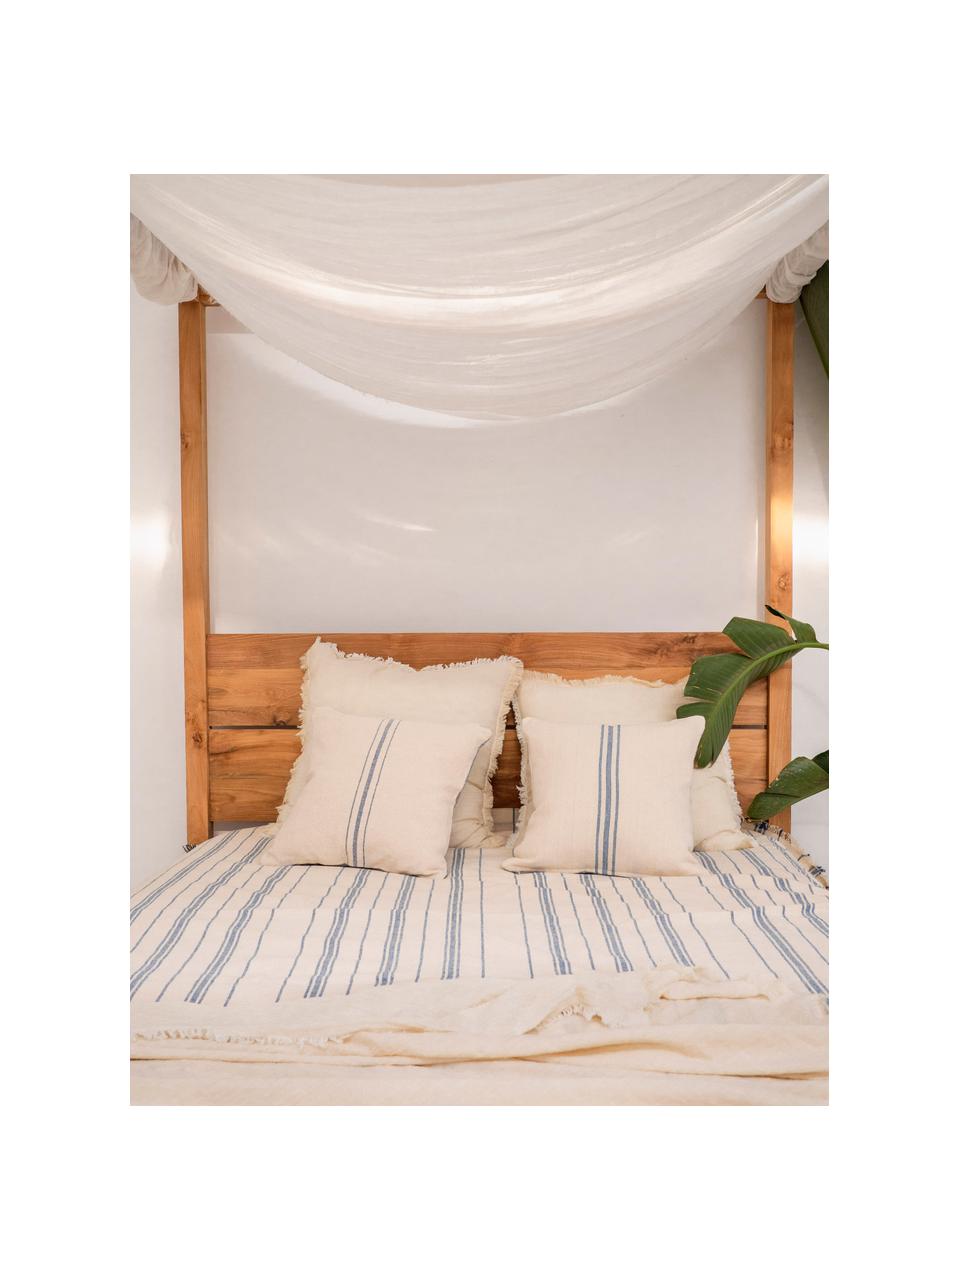 Gestreifte Tagesdecke Capri aus Baumwolle, 100% Baumwolle, Cremefarben, Blau, B 180 x L 260 cm (für Betten bis 140 x 200 cm)